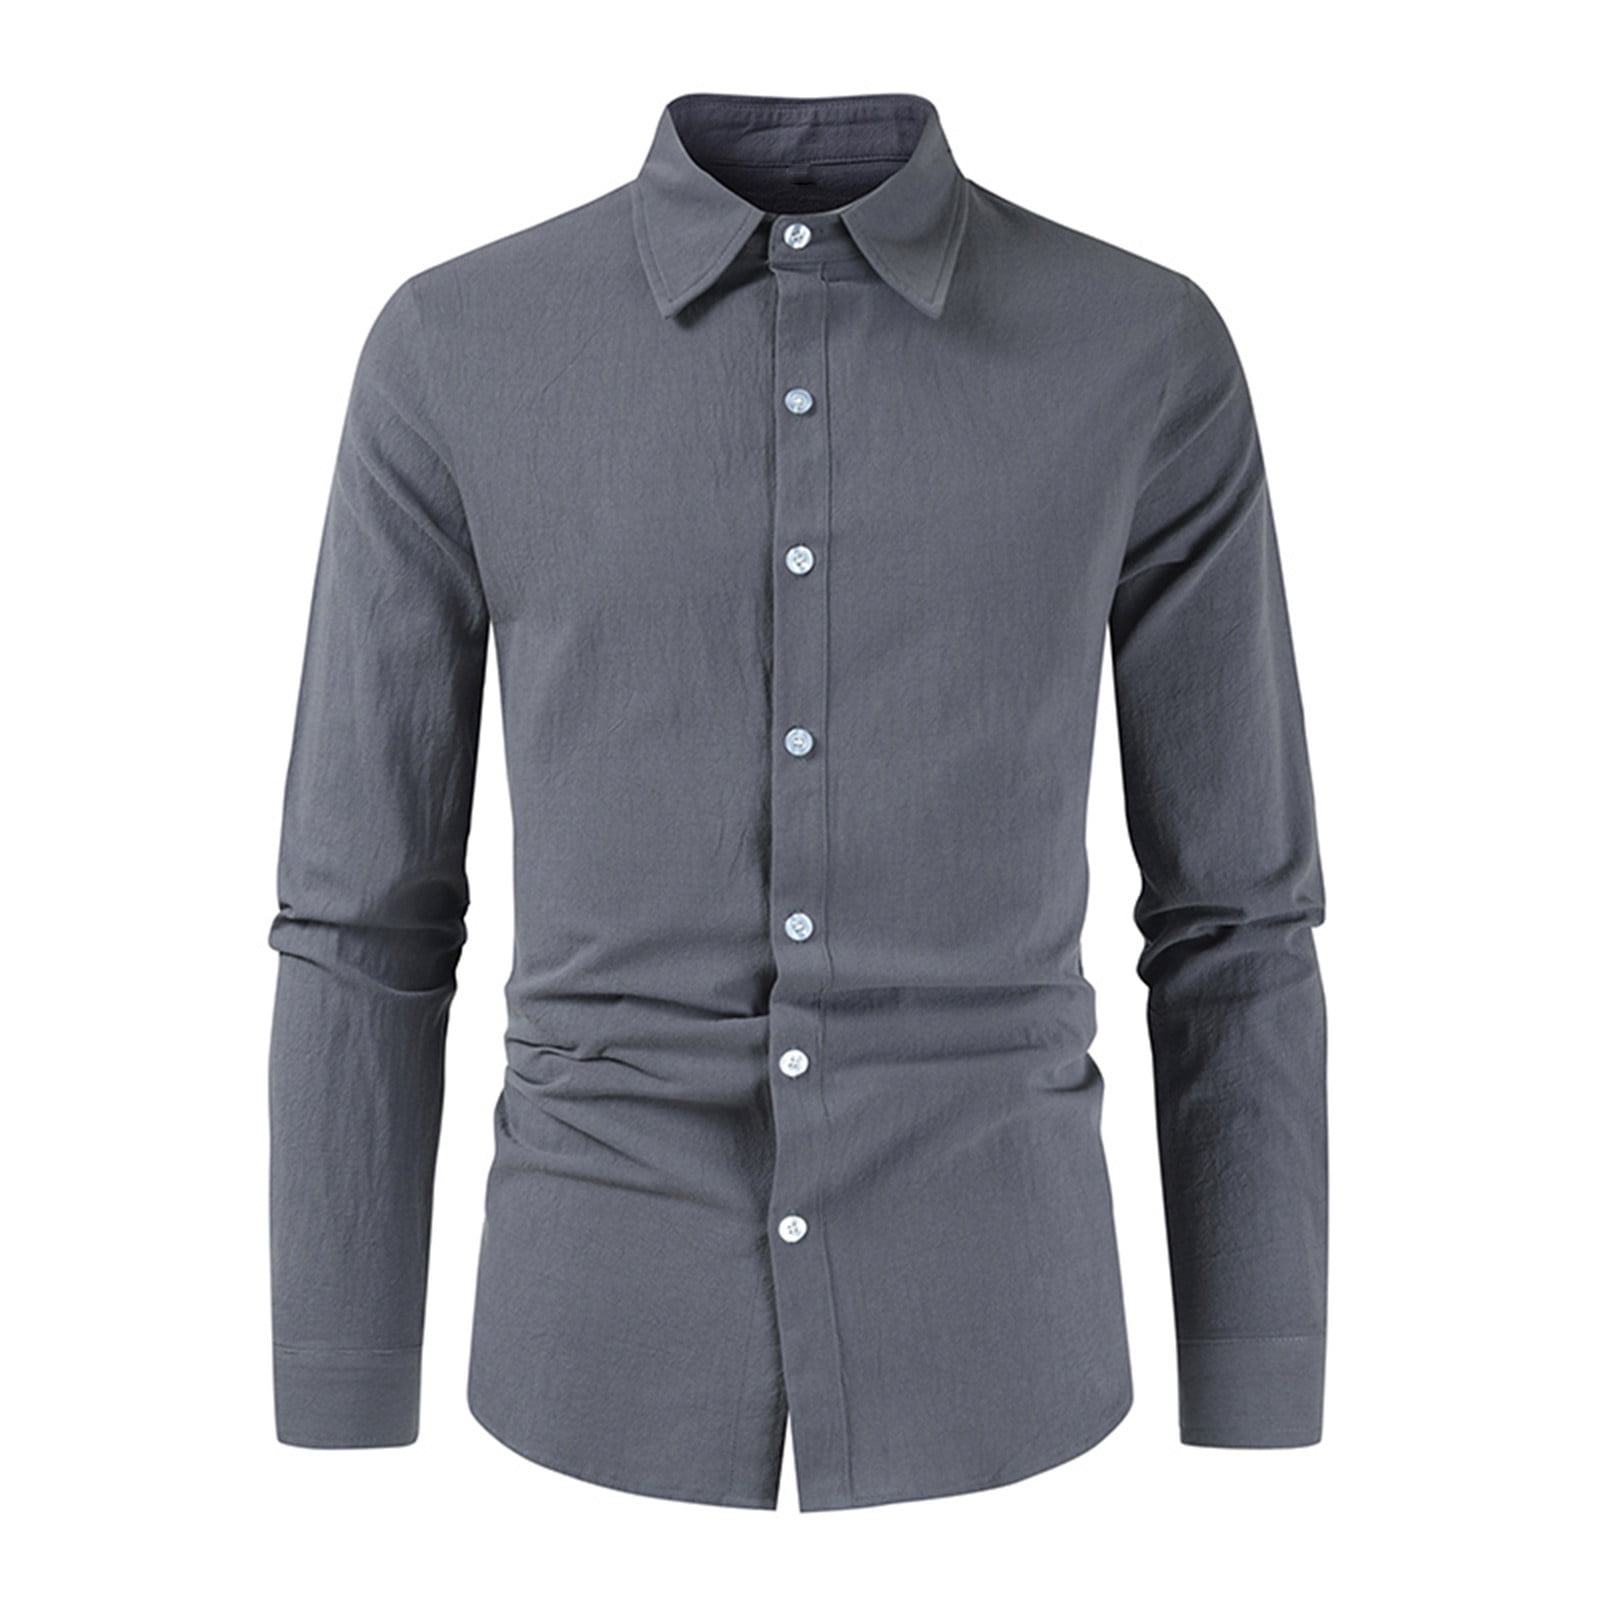 Men's Cotton Linen Shirt Solid Band Collar Long Sleeve Button Down Blouse  Summer Lightweight Casual Beach Holiday Tops 